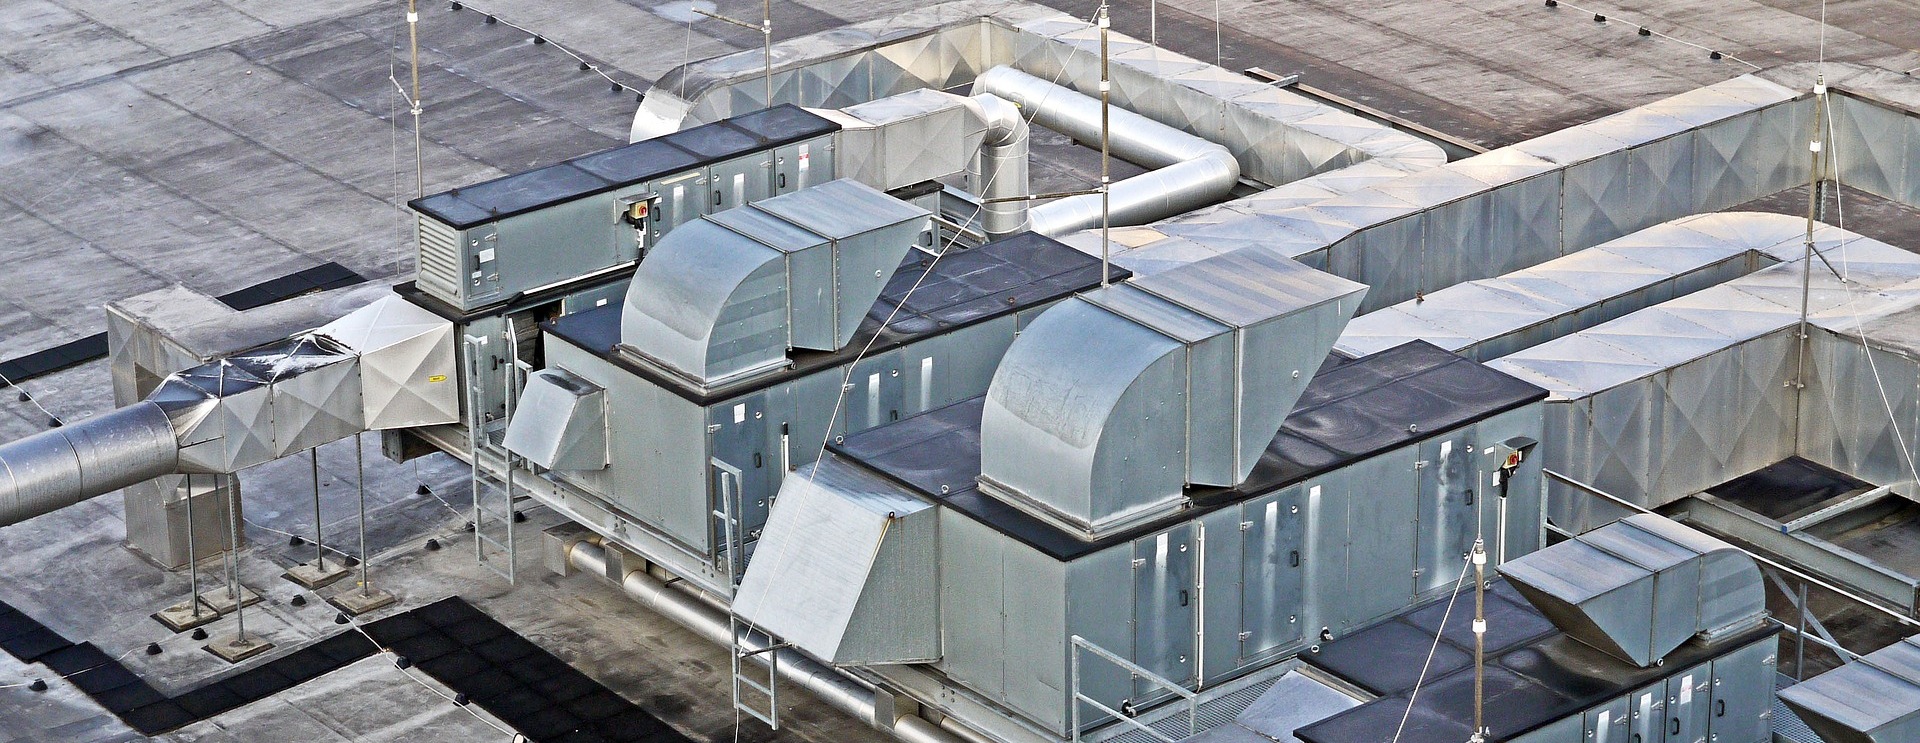 Производитель систем вентиляции направит ₽300 млн на новые проекты и покупку сырья